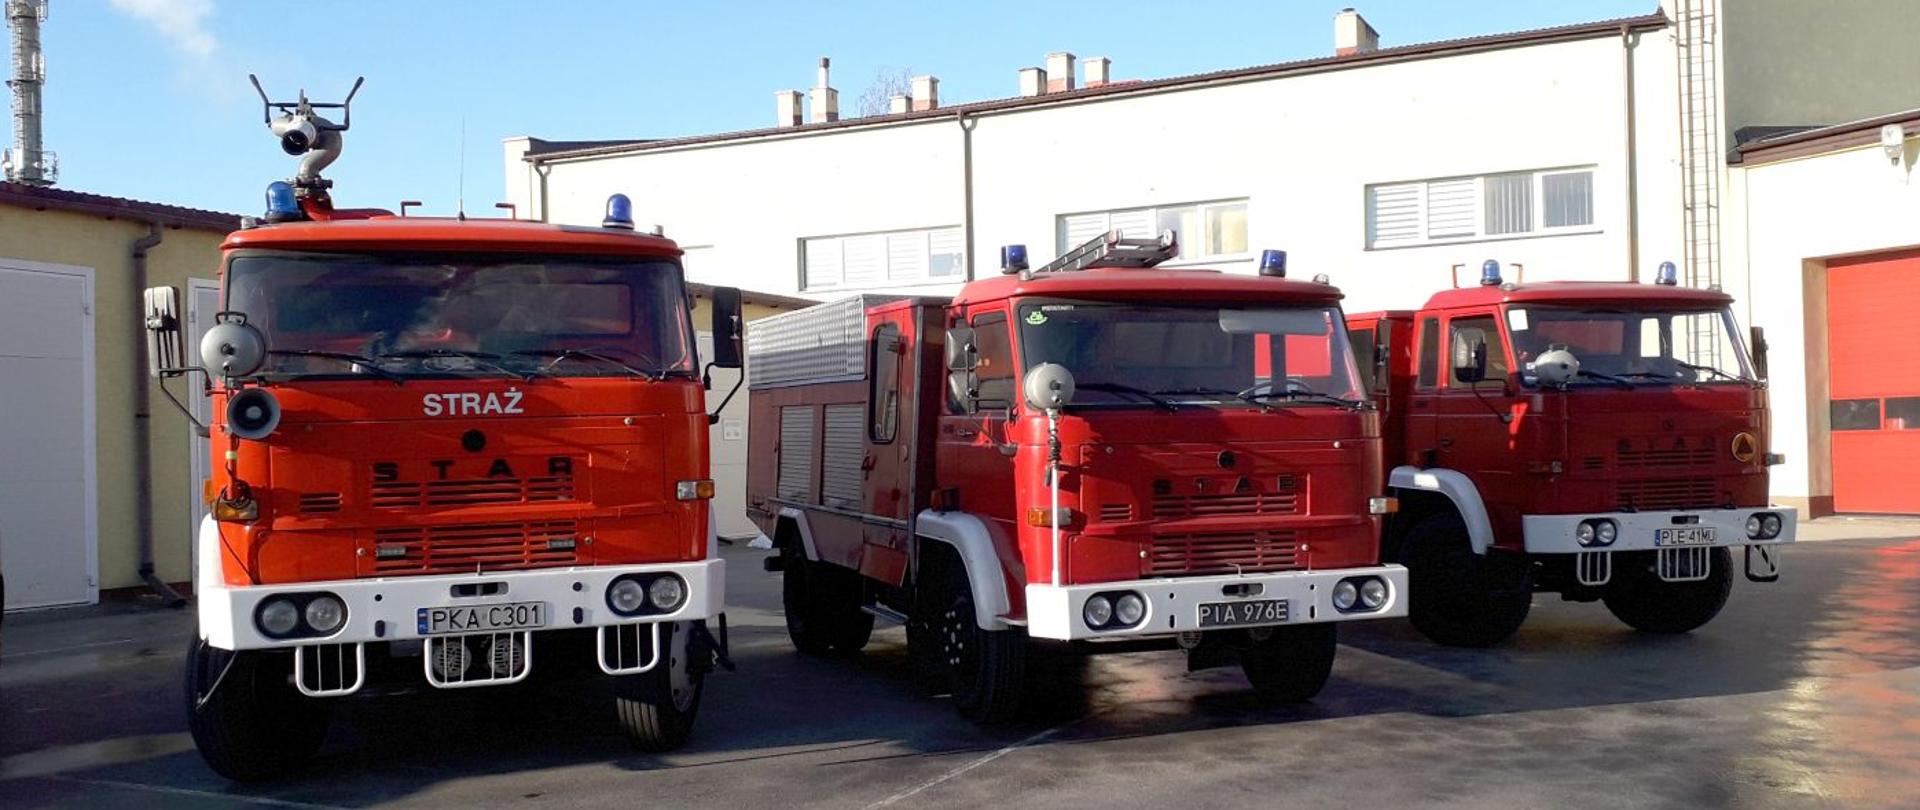 3 samochody strażackie STAR przekazywane ukraińskim strażakom